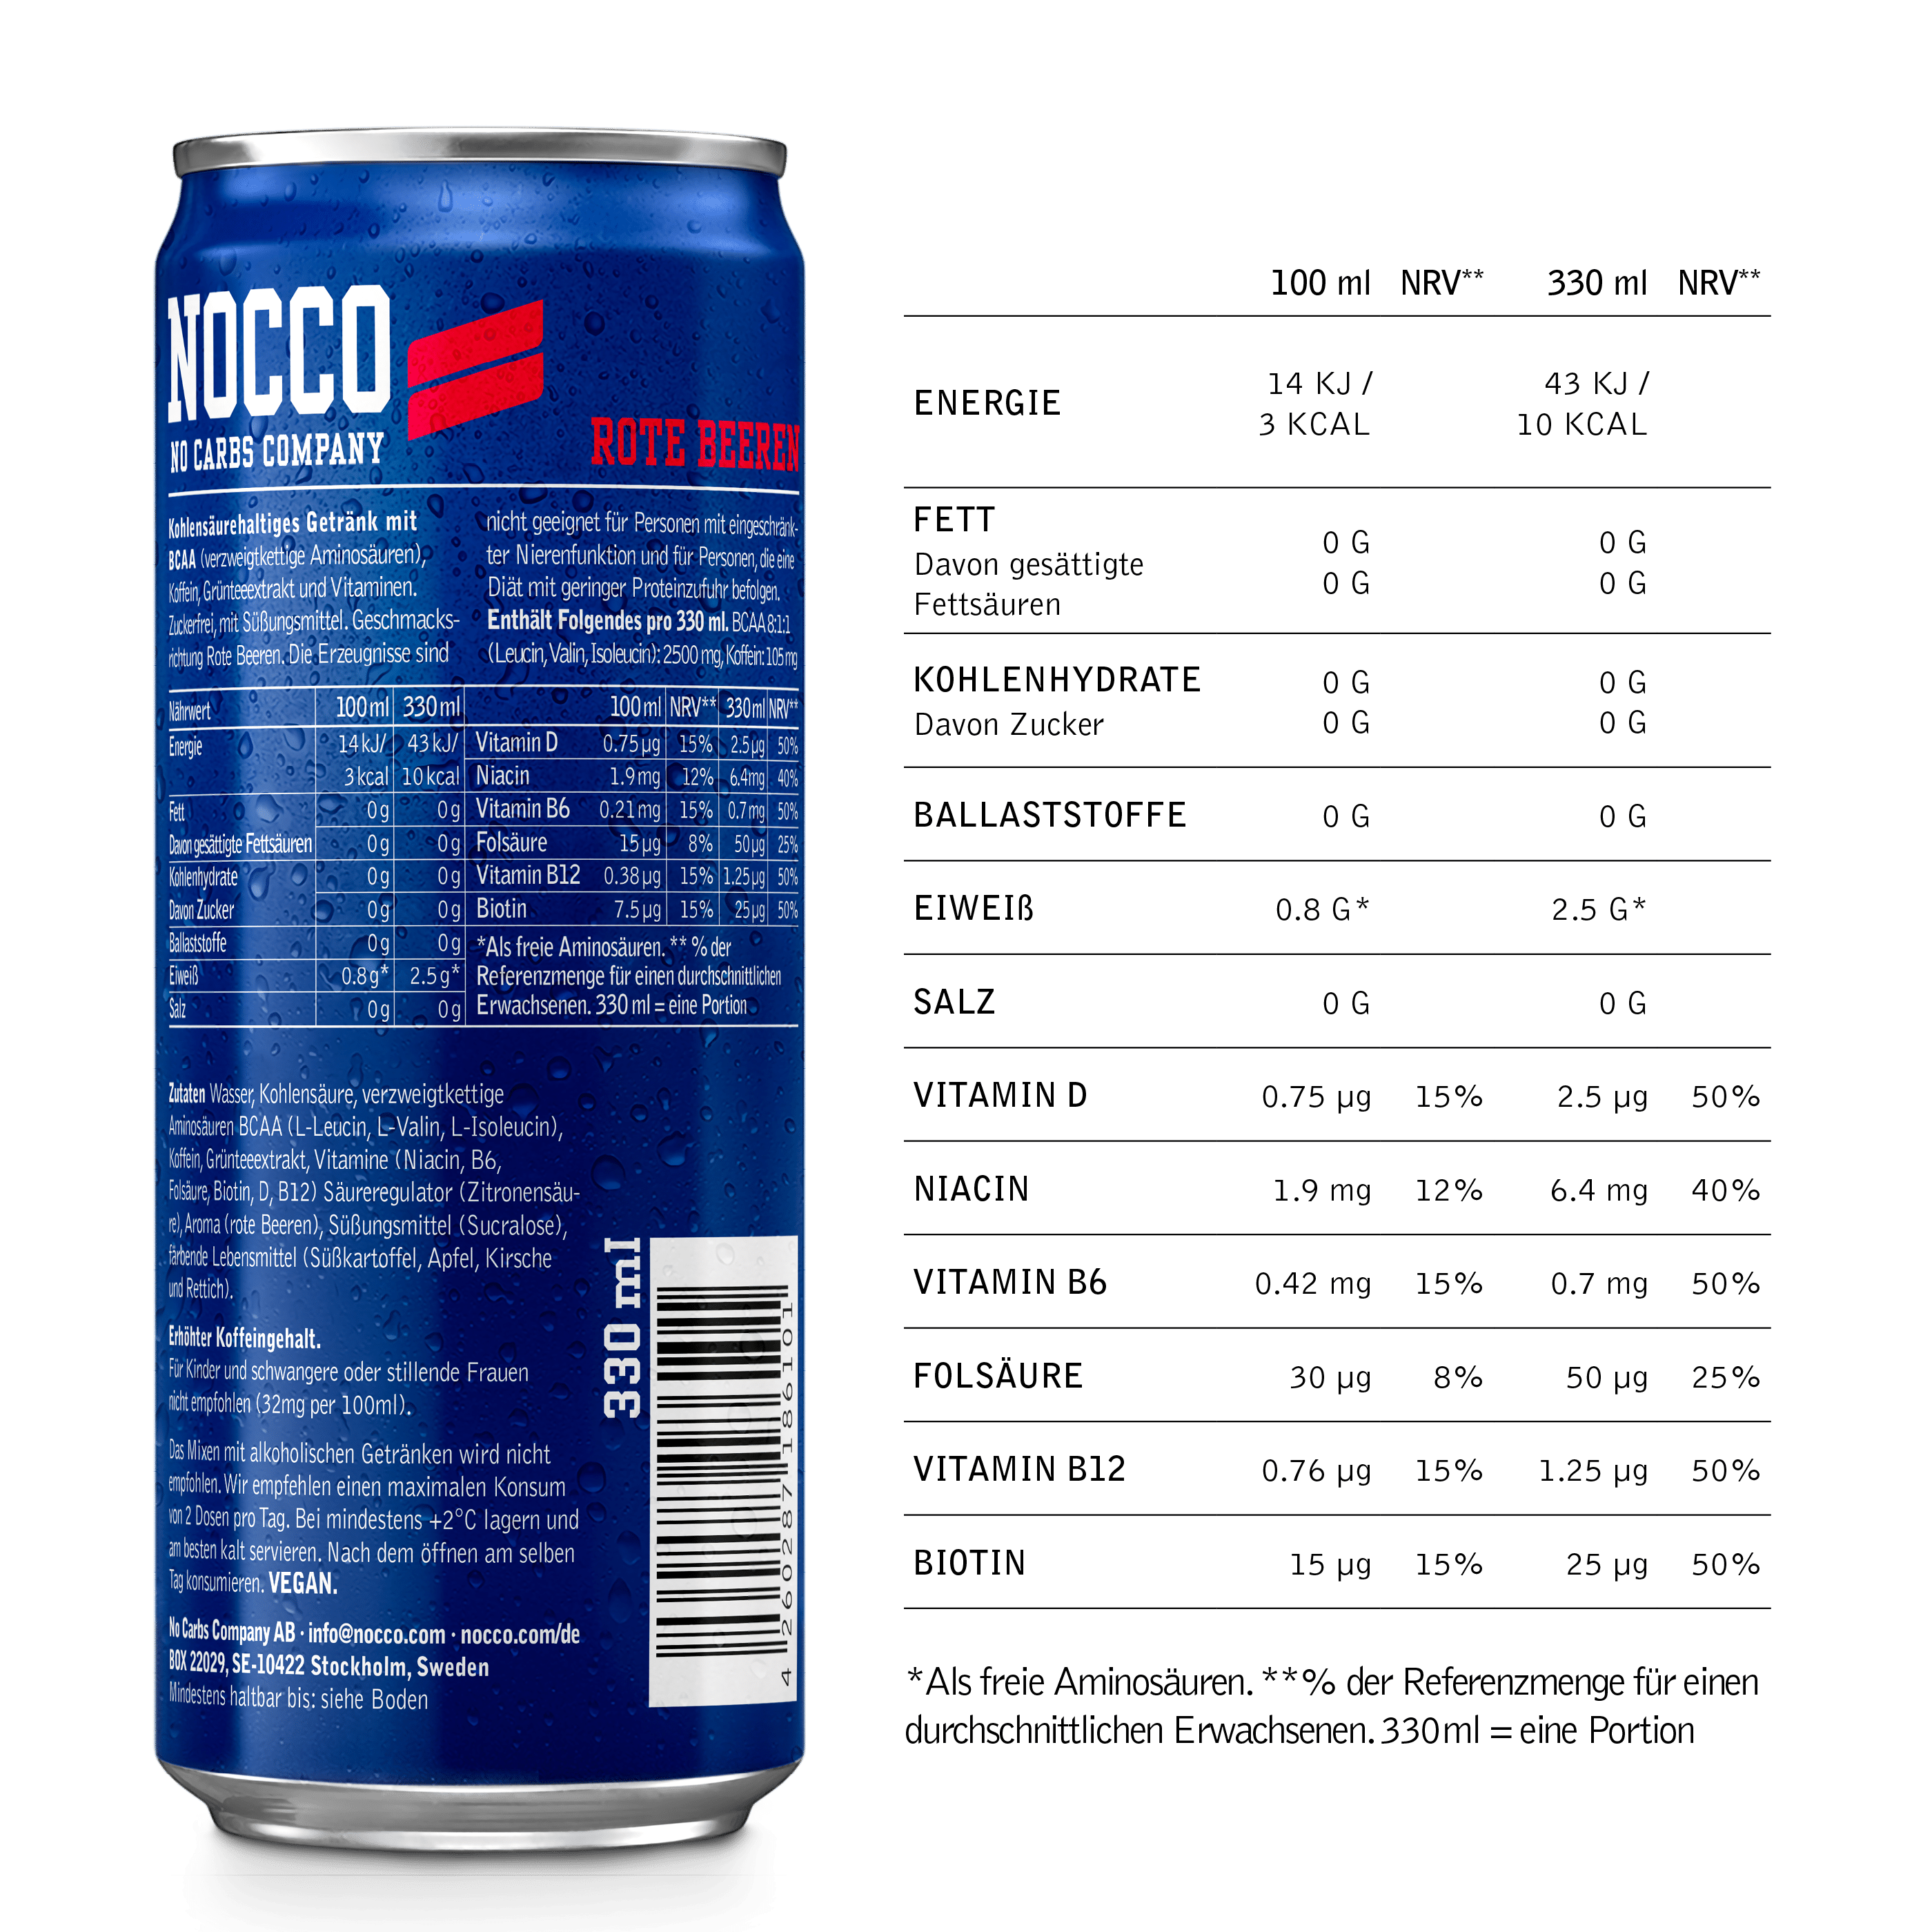 NOCCO Rote Beeren Nutrition